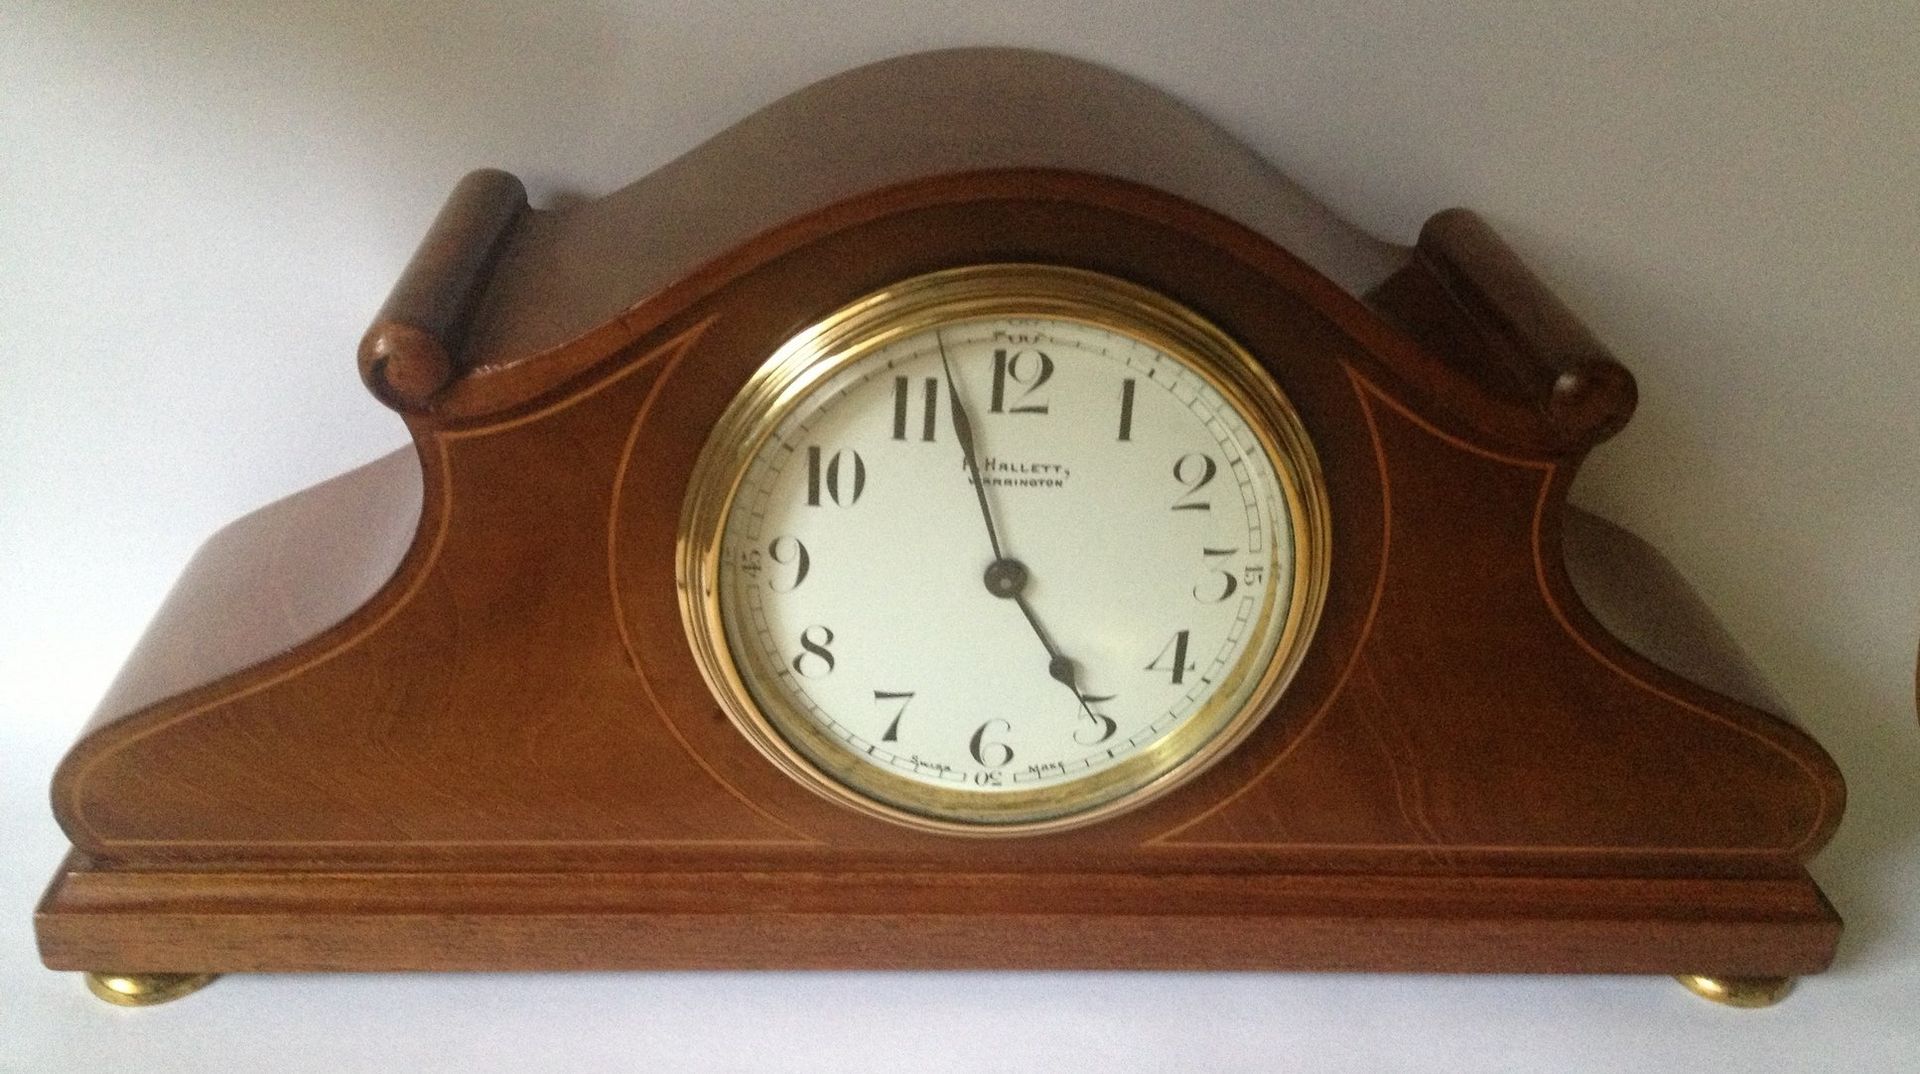 Mahogany Inlaid Mantel Clock by Hallett, Warrington.